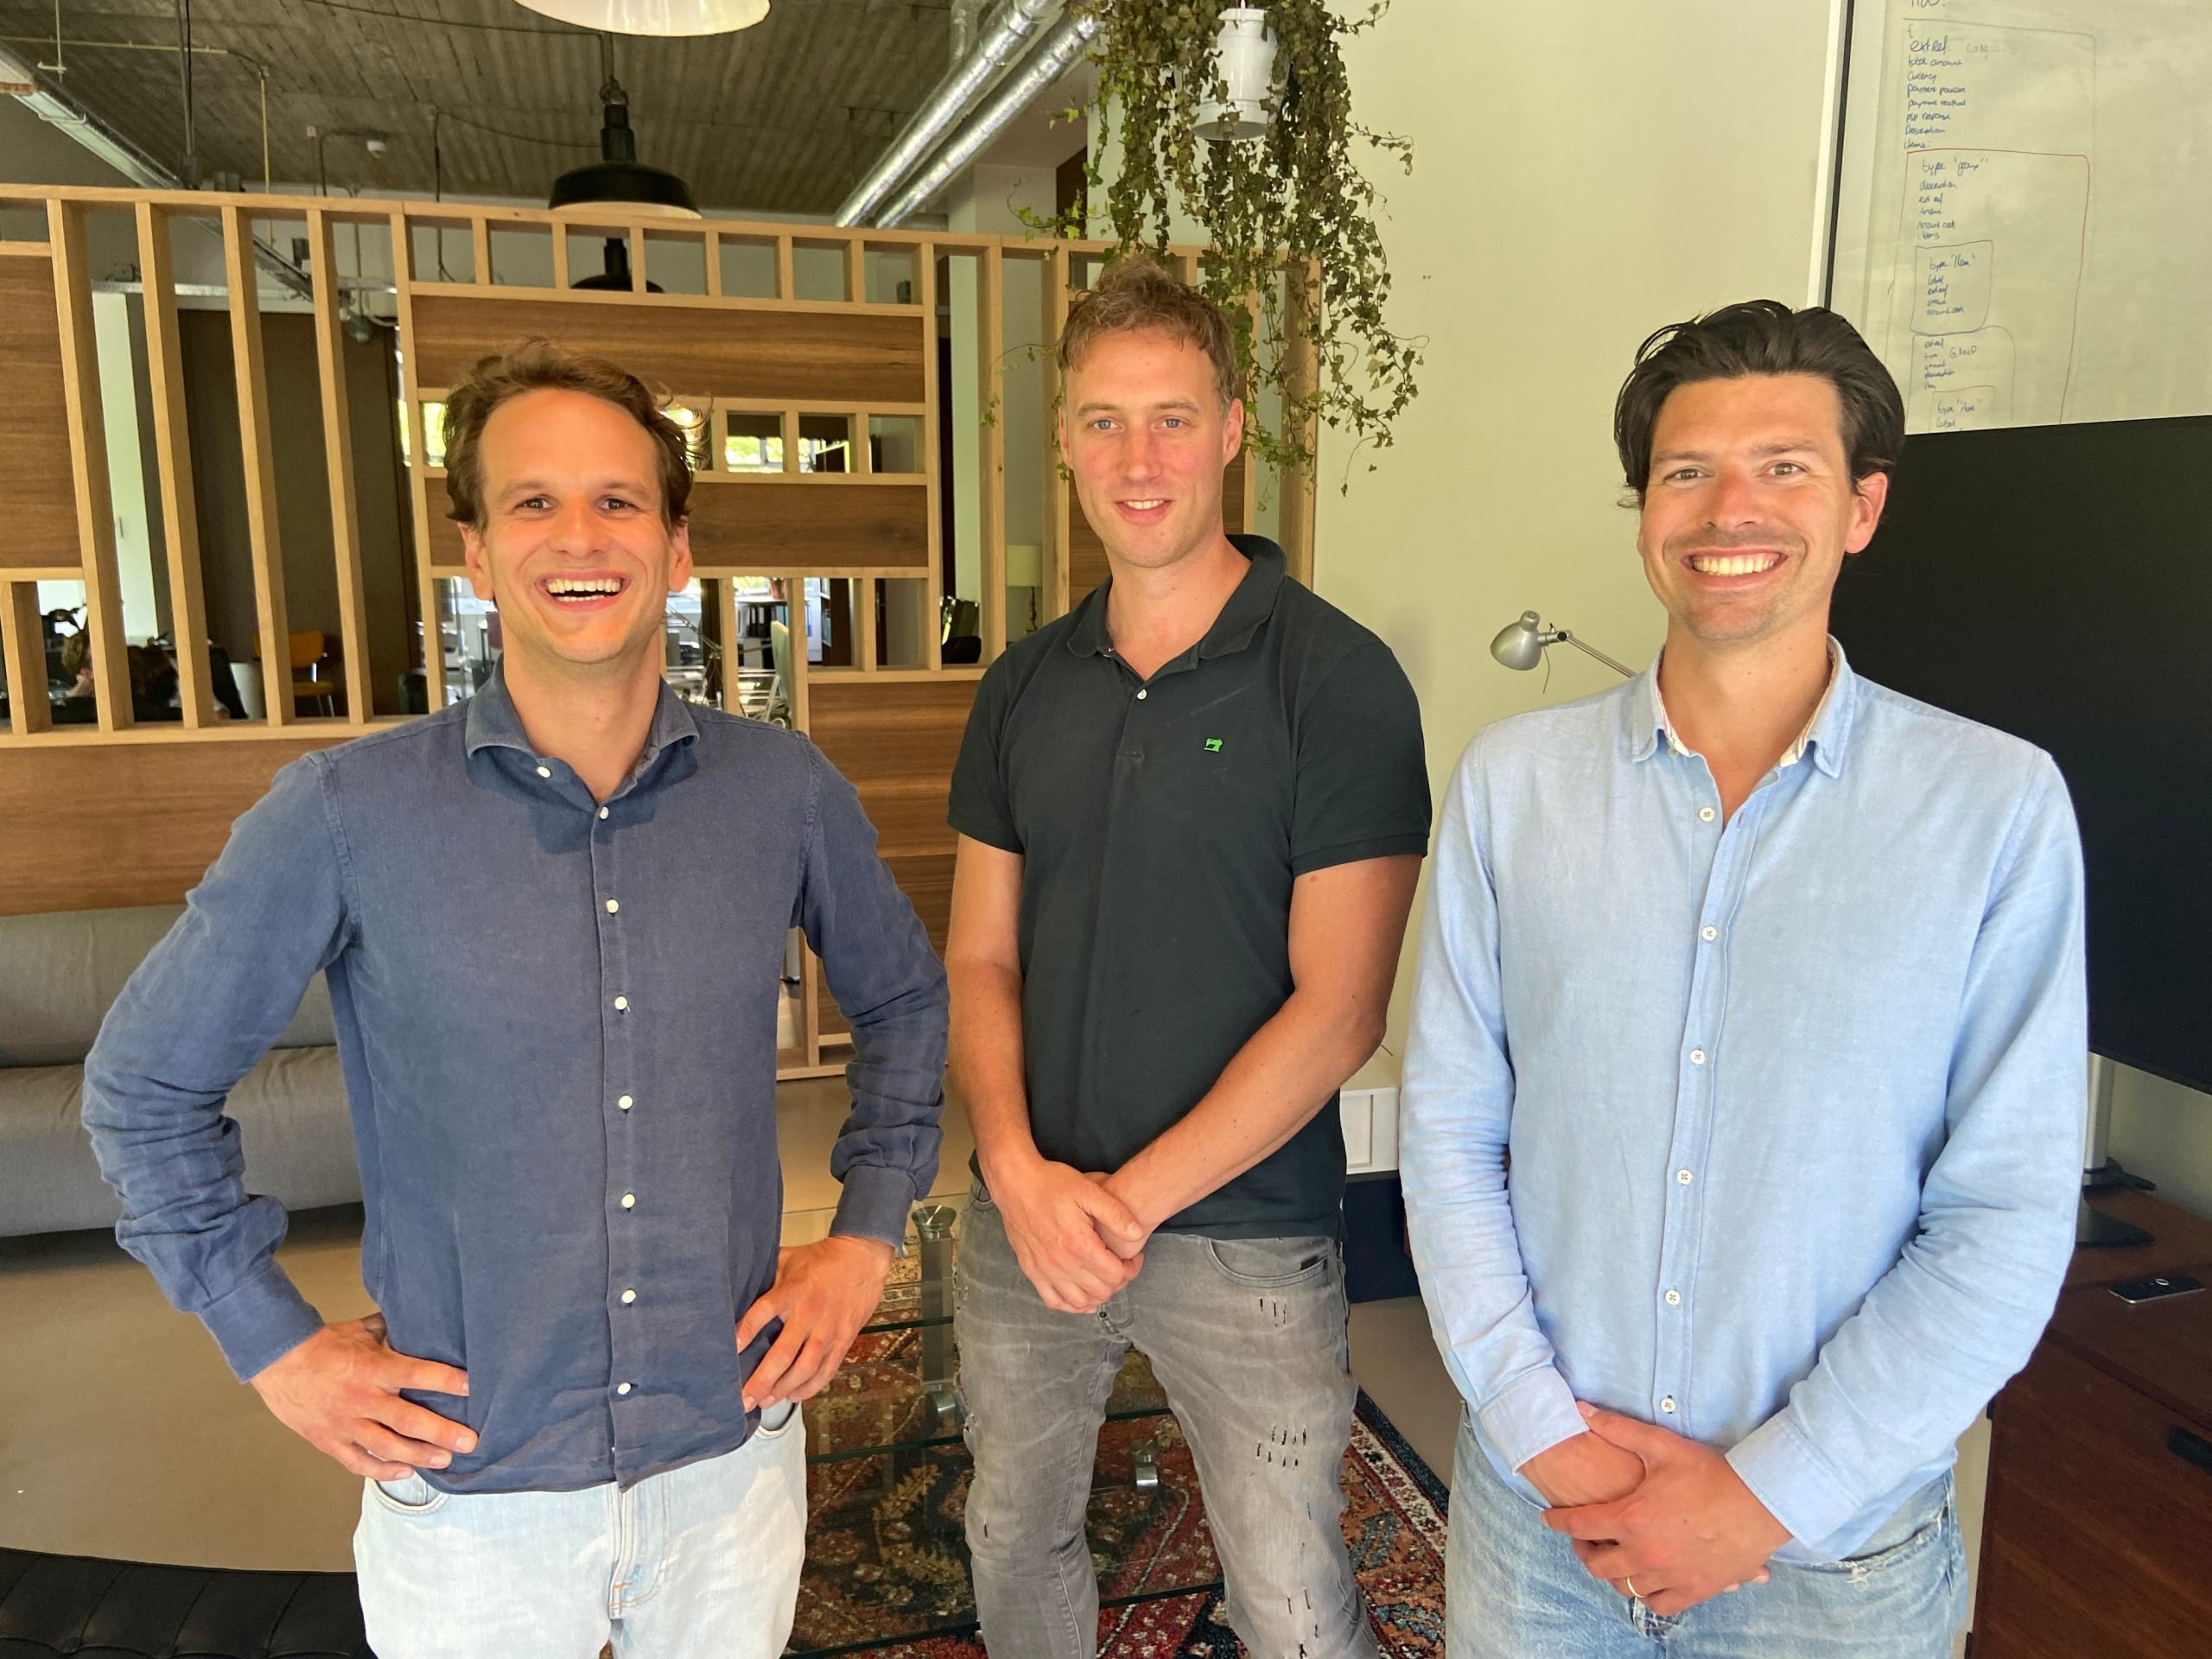 Het team van Payaut: Ernst van Niekerk (CEO), Gillis Haasnoot (CTO) en Pieter de Haas (CCO).